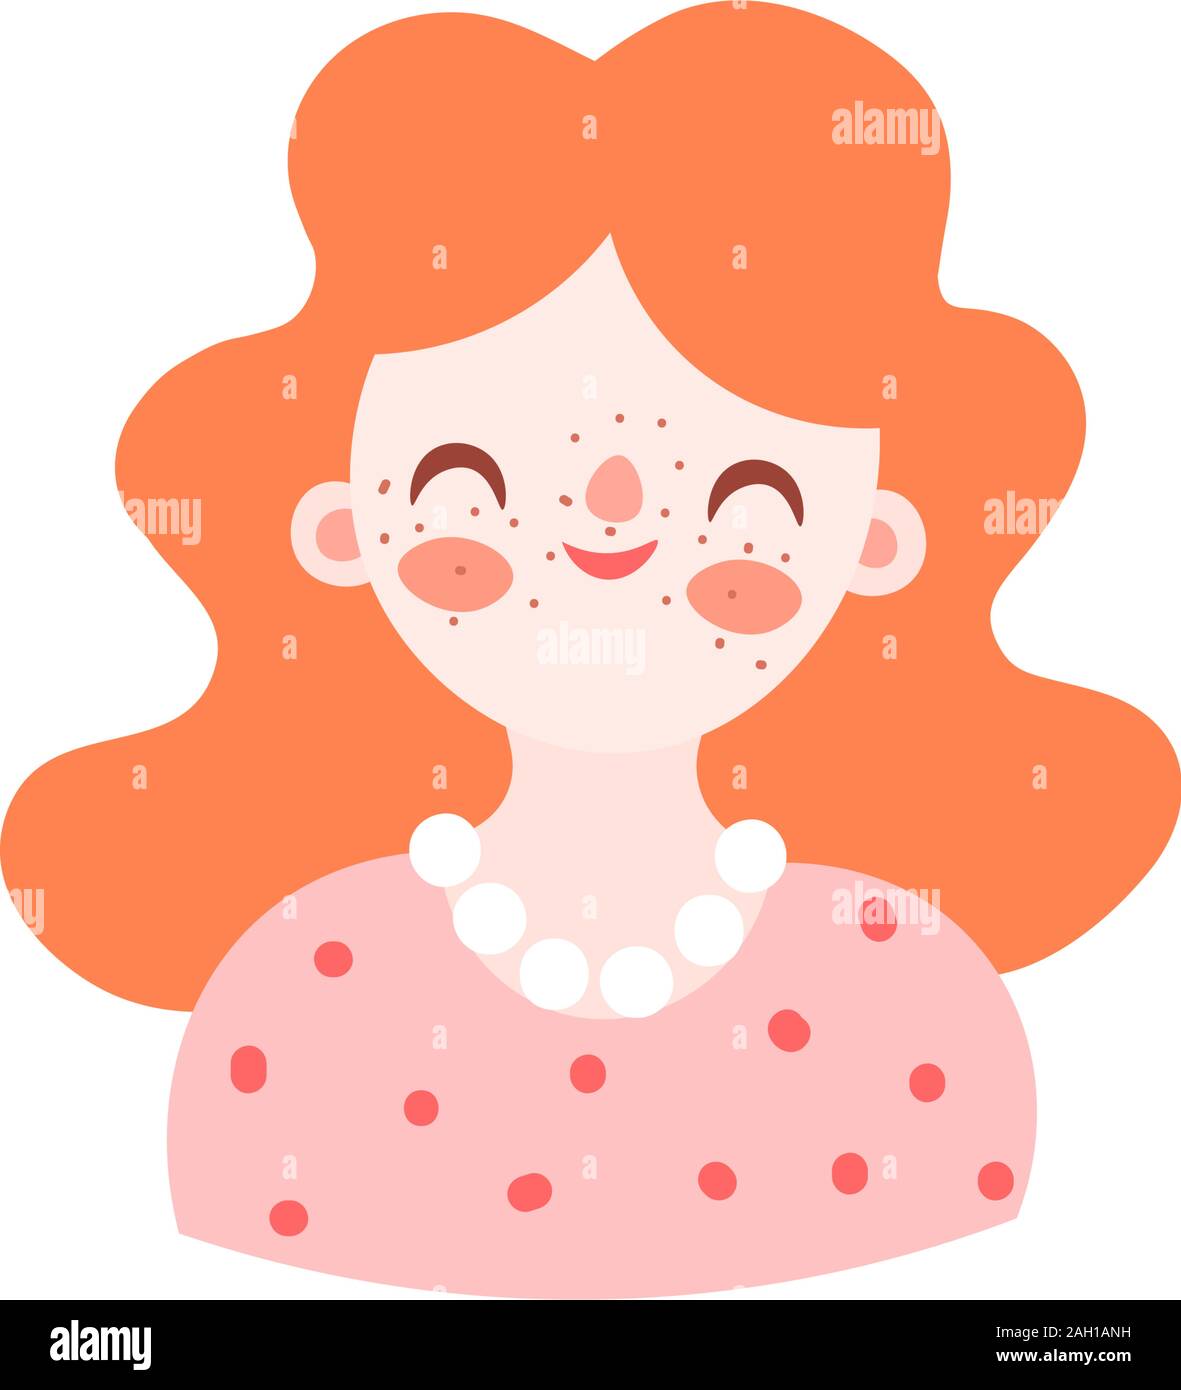 Cute cartoon illustration de jolie belle femme rousse. Fille, femme avatar en robe avec perles, souriant. vector illustration isolé de caractères Illustration de Vecteur